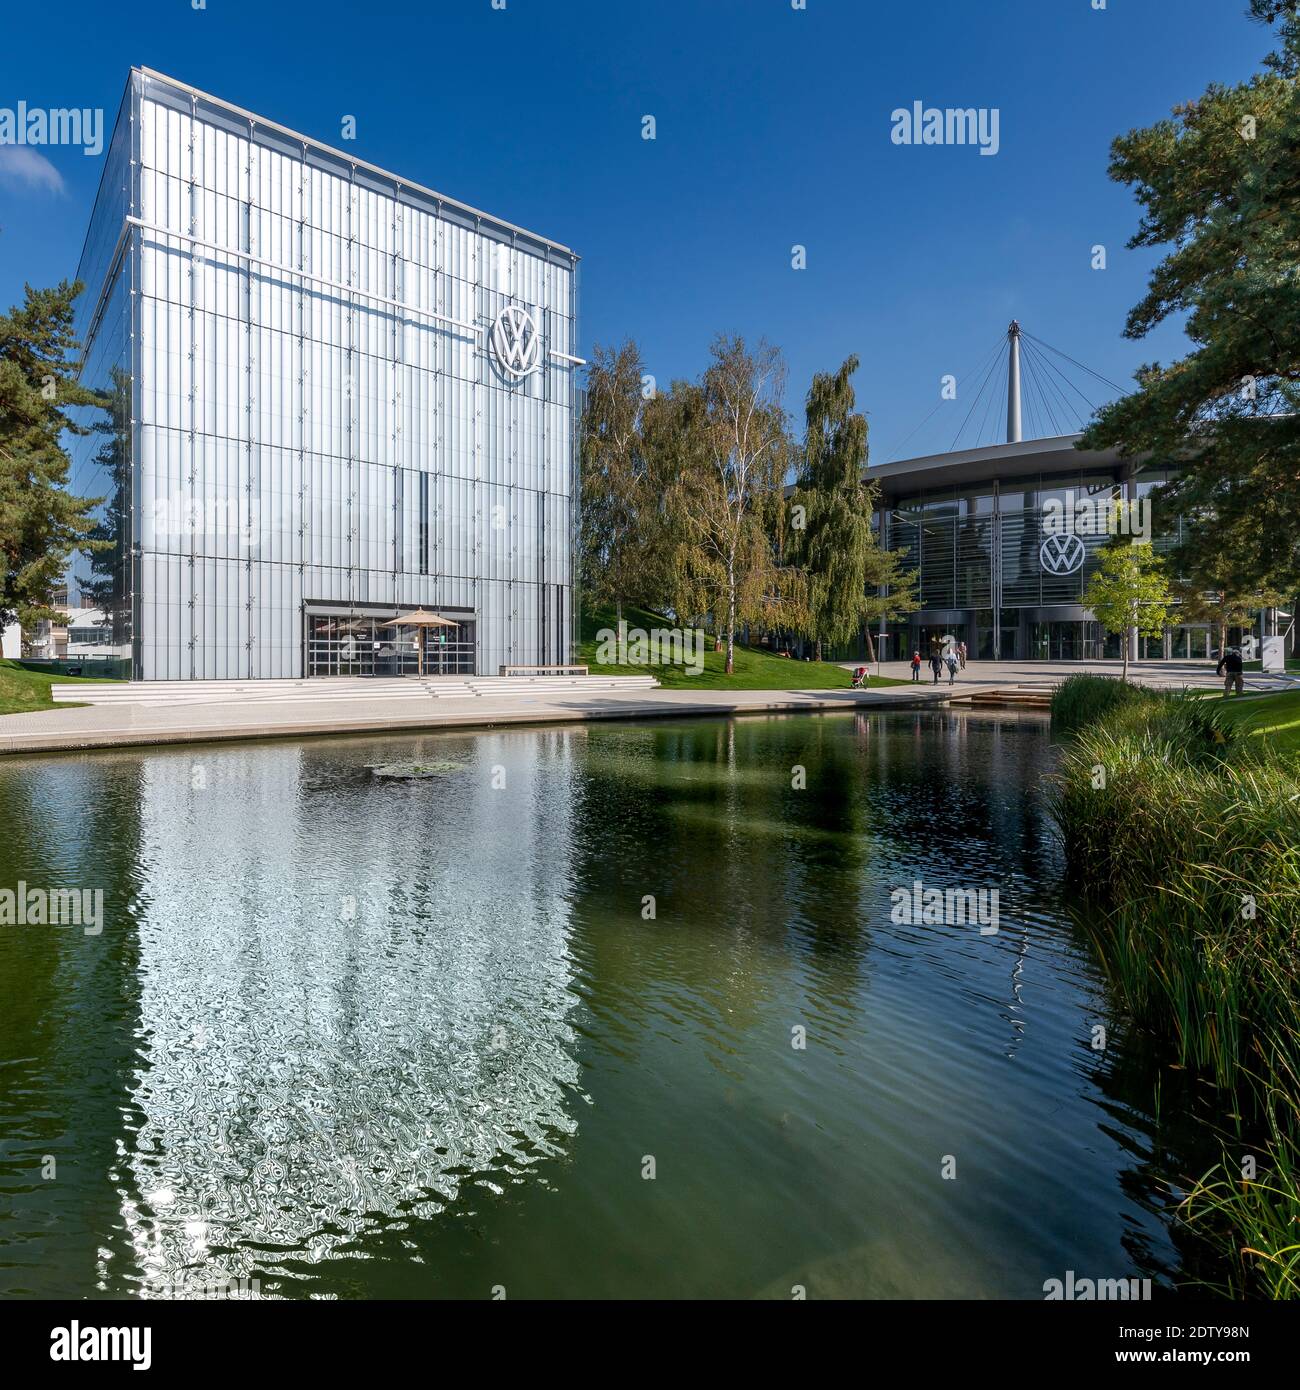 Le pavillon Volkswagen en forme de cube de l'immense Autostadt - ville de voitures - à Wolfsburg. Allemagne. Conçu par Ray Hole Architects. Banque D'Images